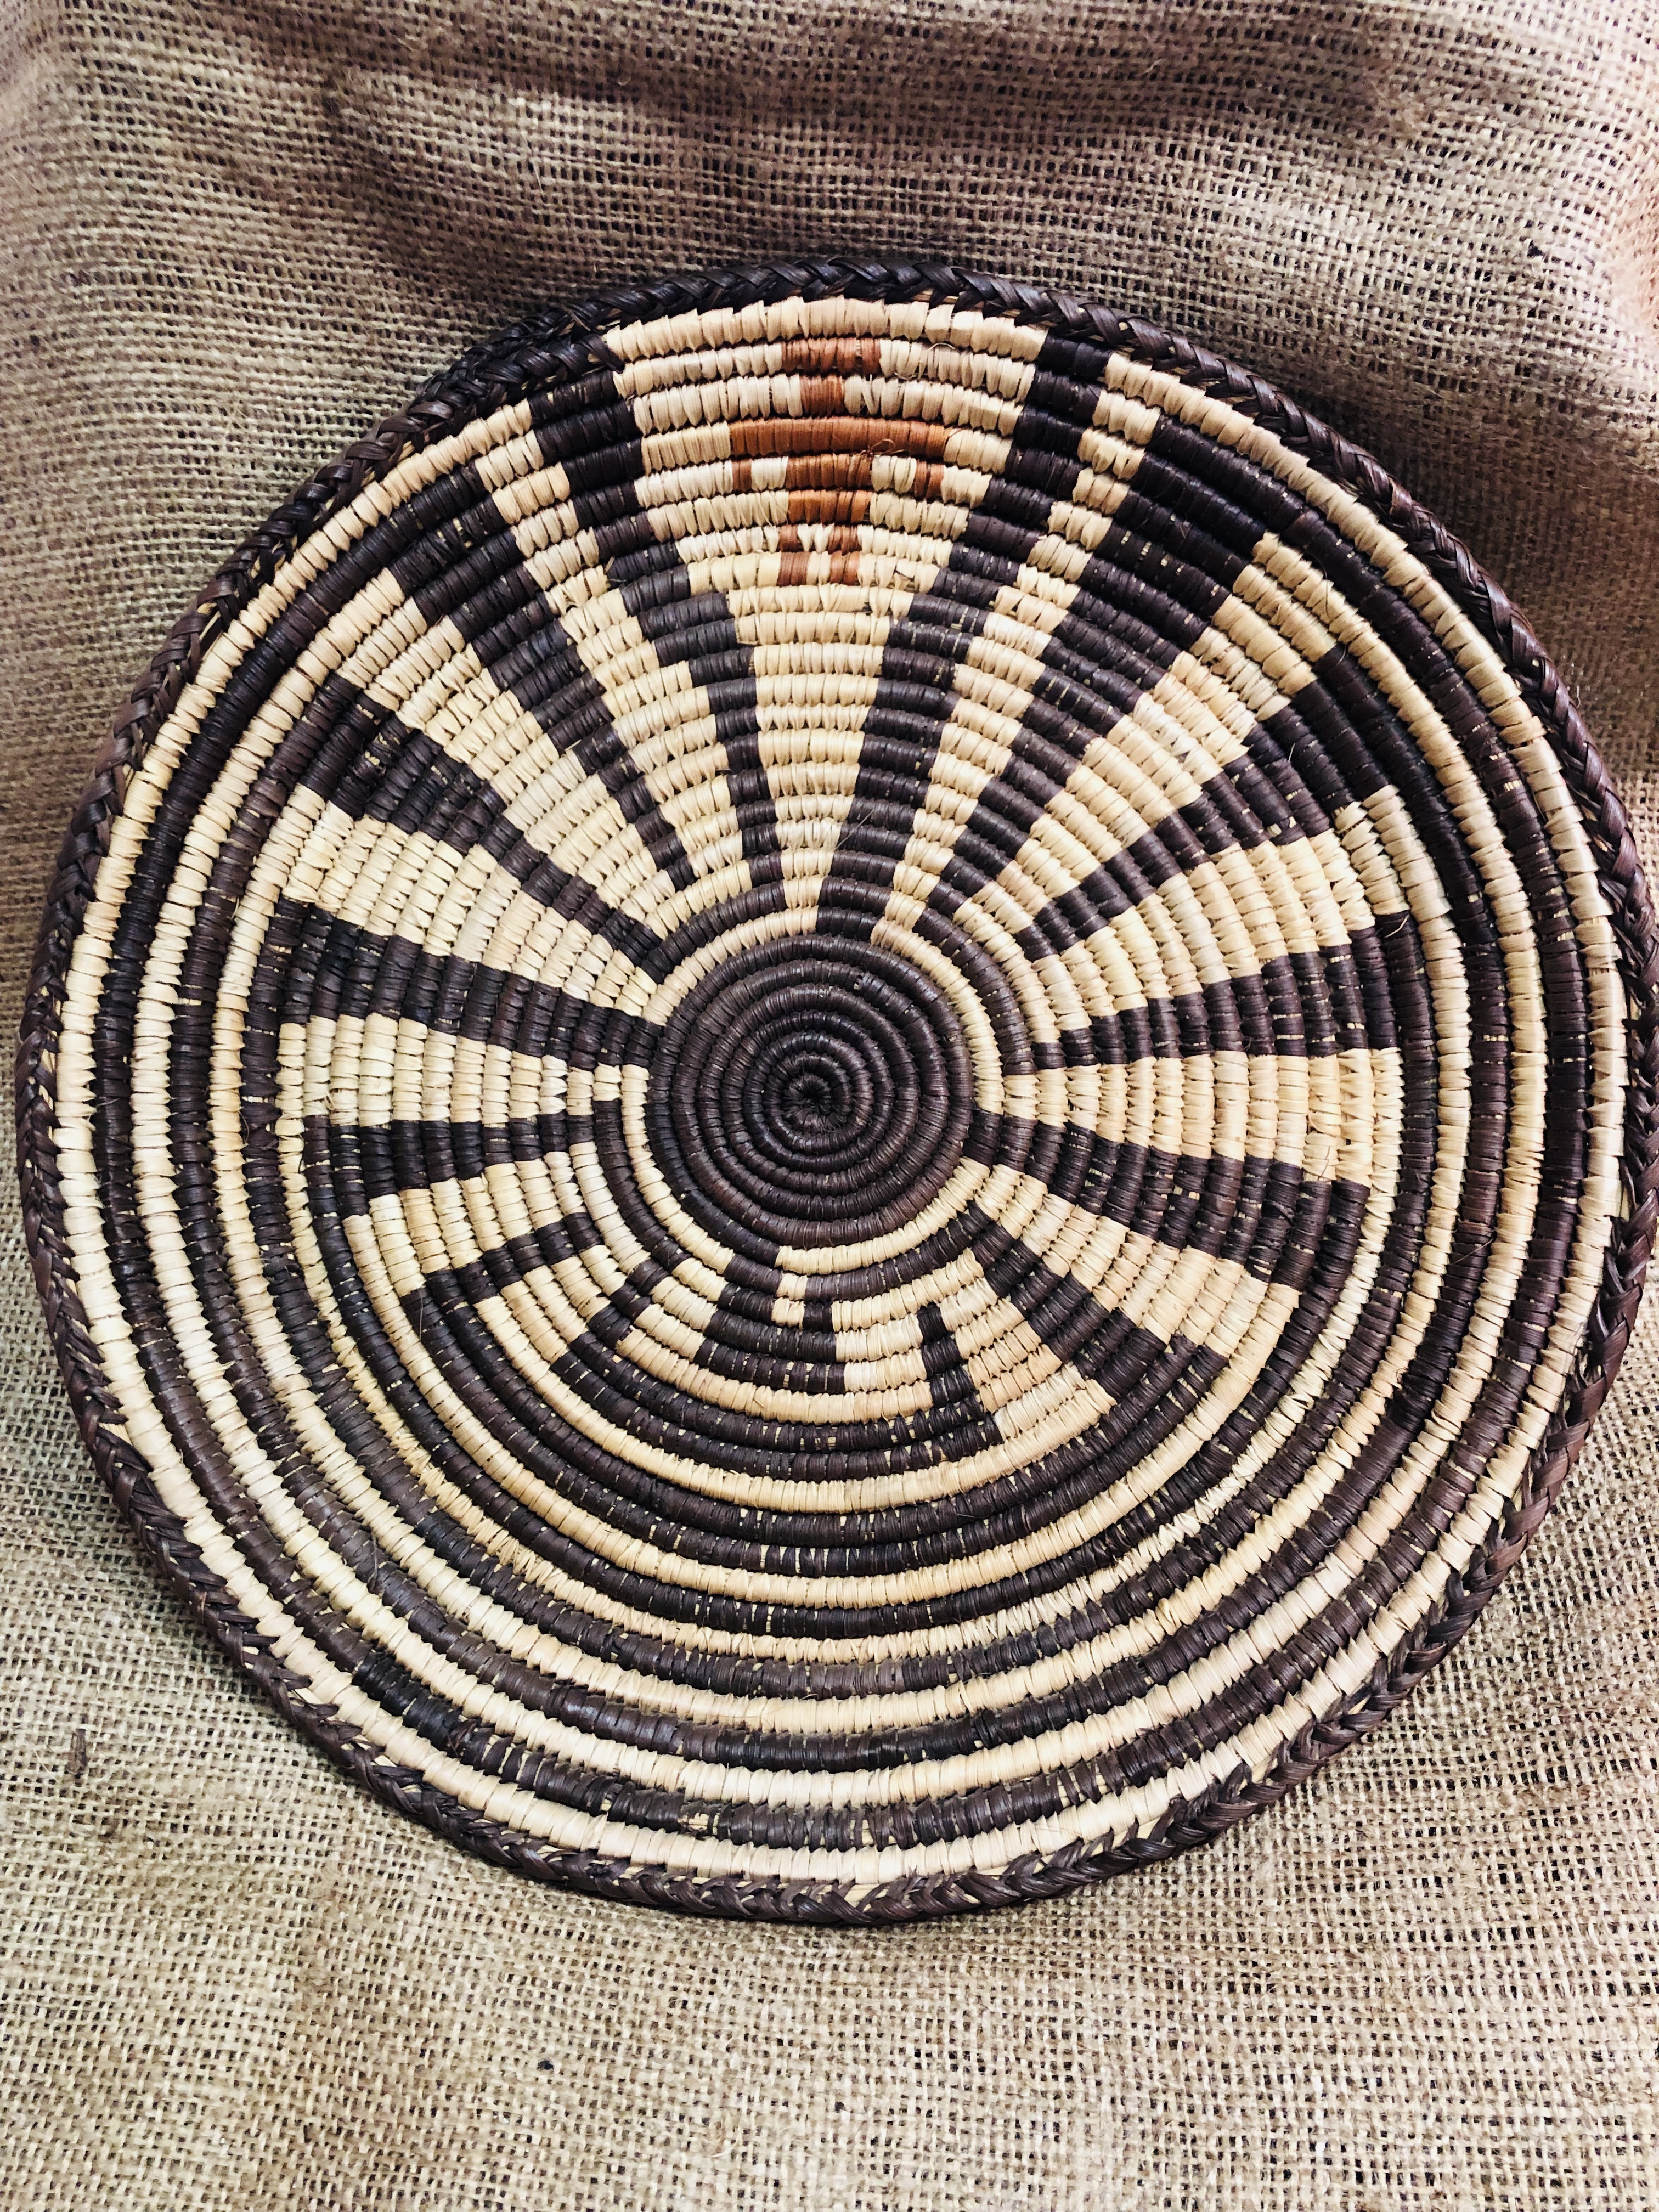 Man in the Maze Pima Basket – Cahokia Mounds